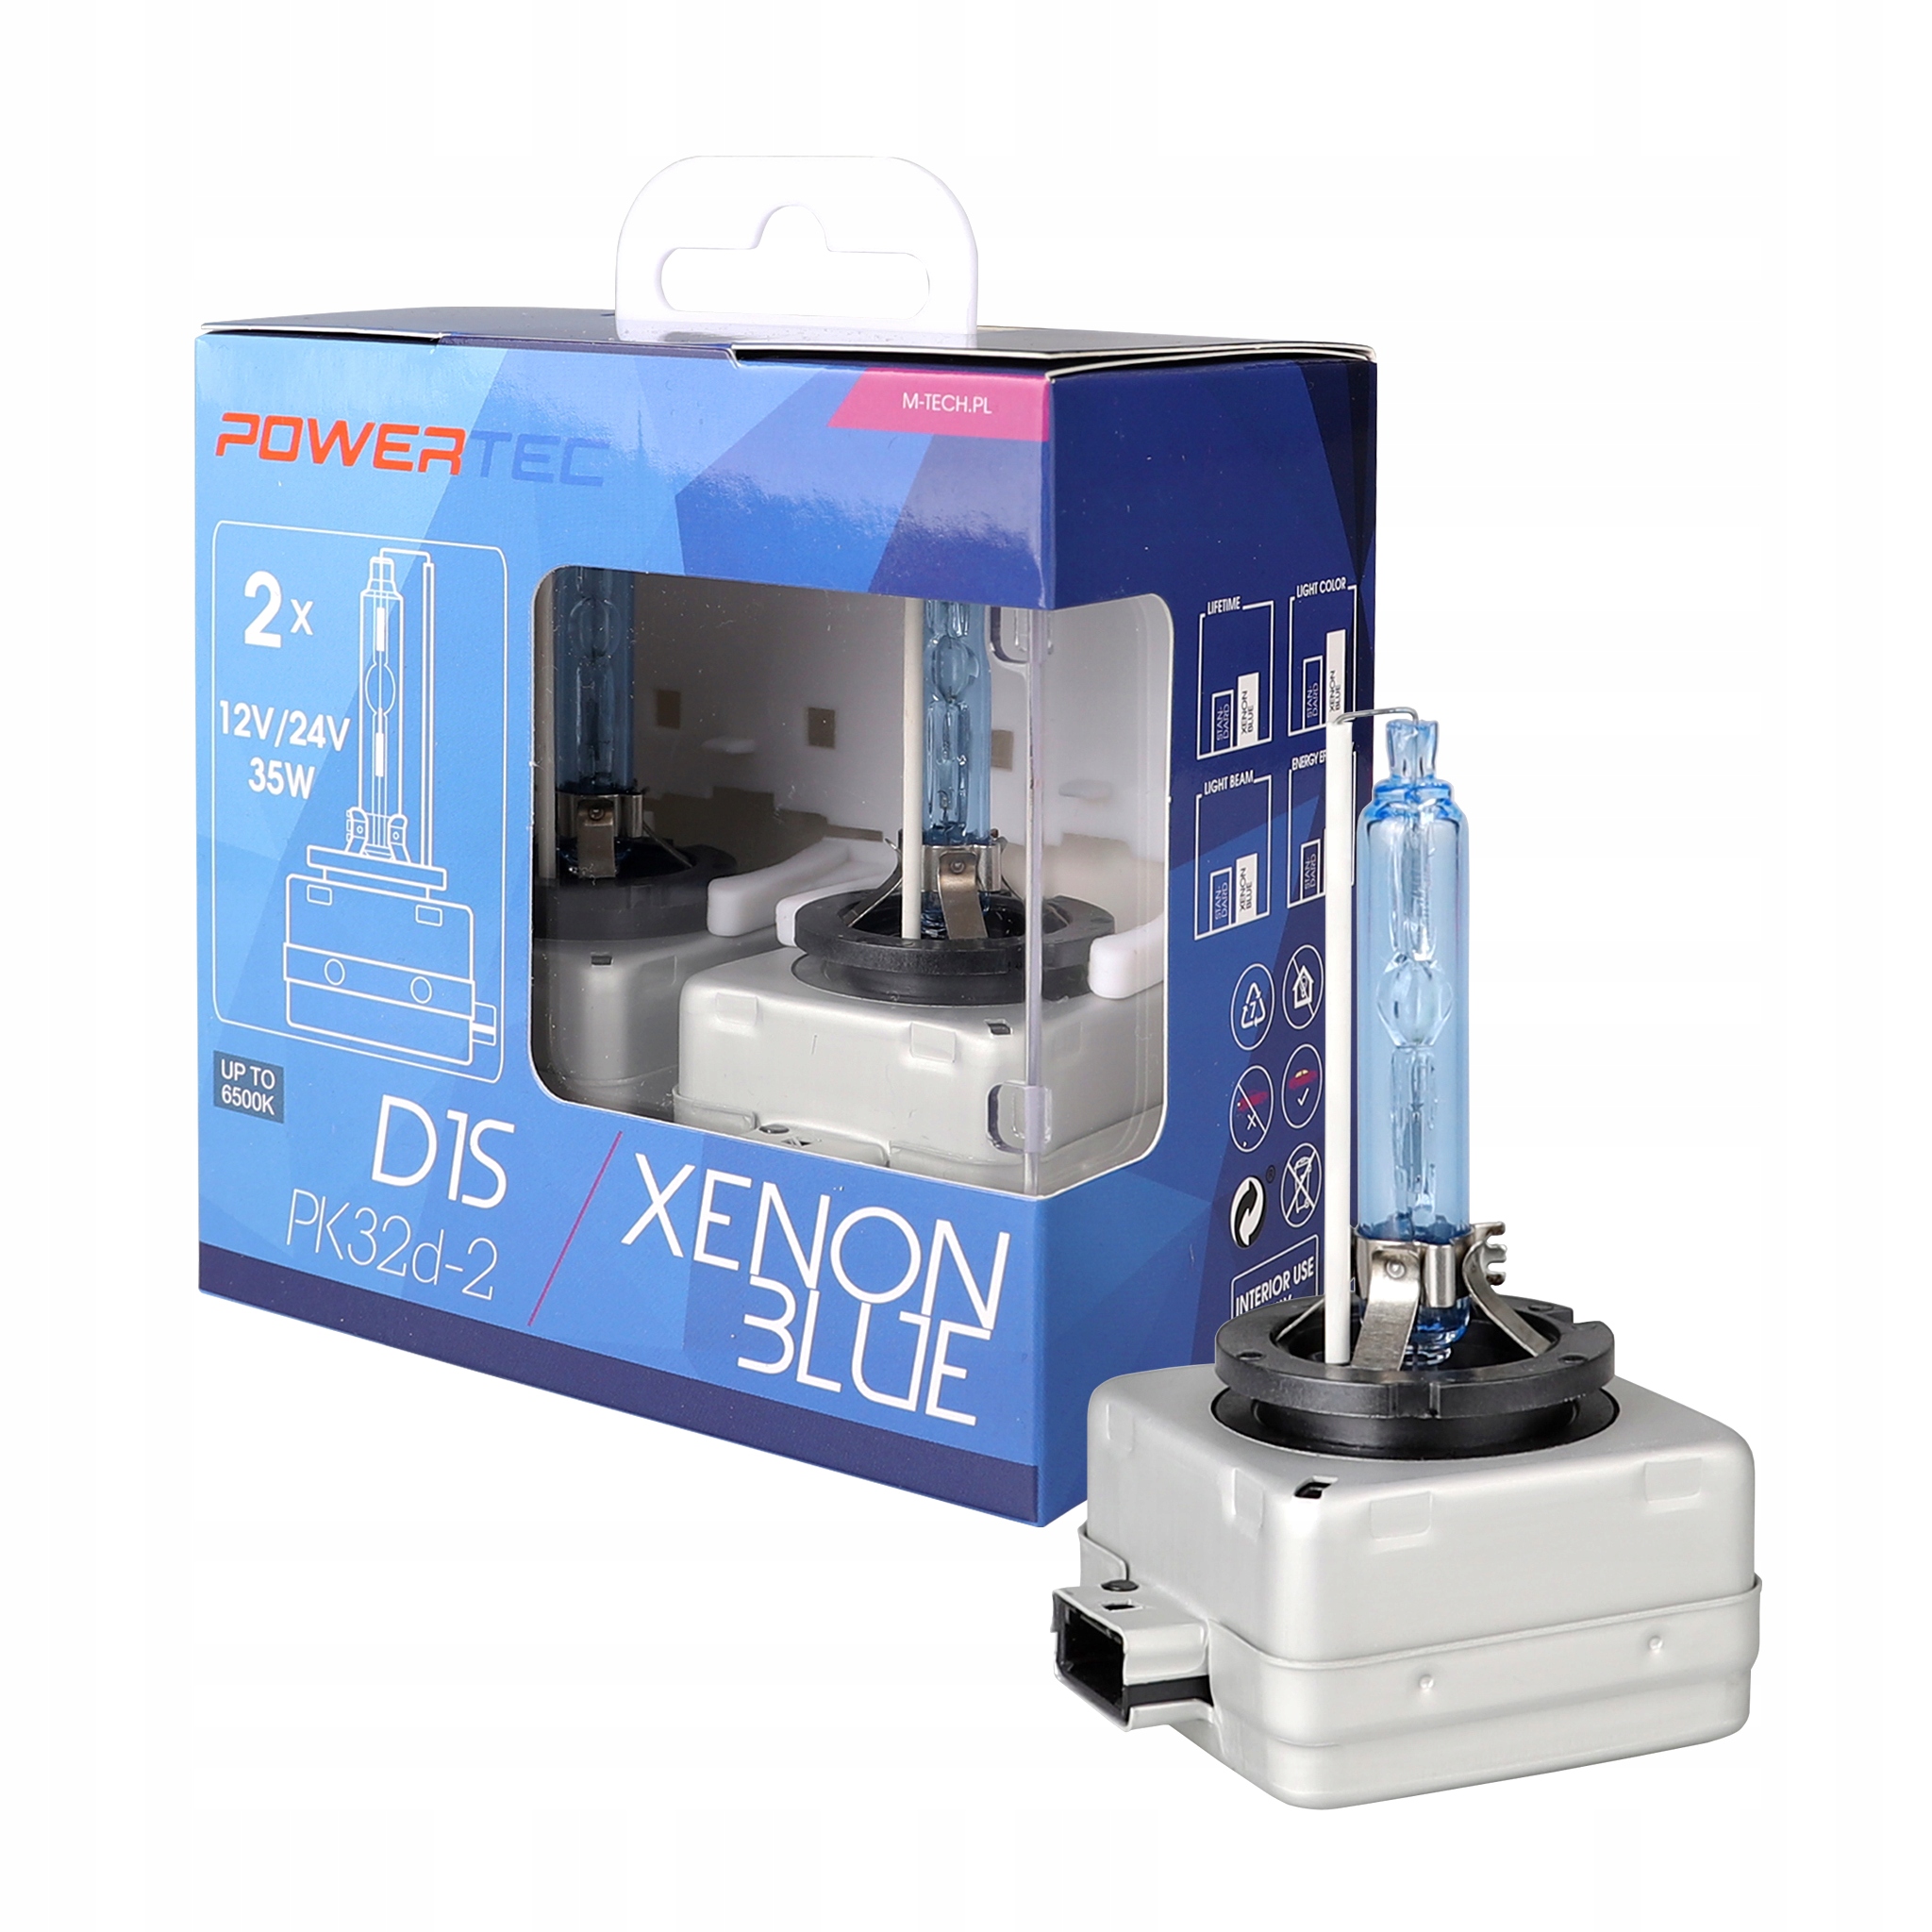 D1s ксенон купить. W5w Xenon Blue. Xenon Technology.